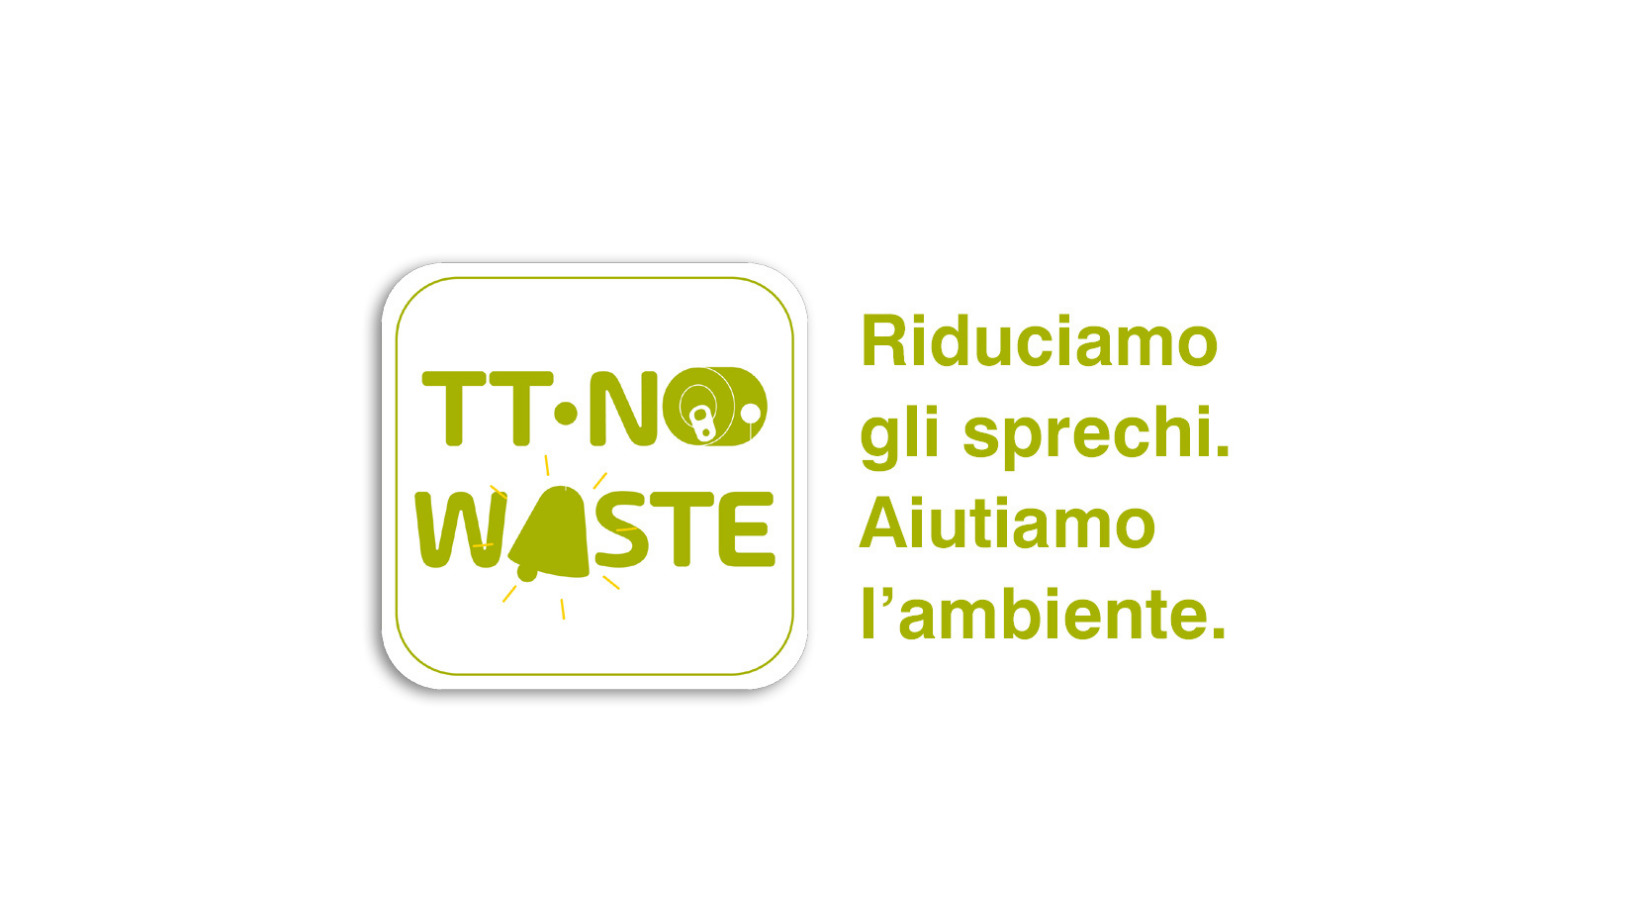 TT-No Waste